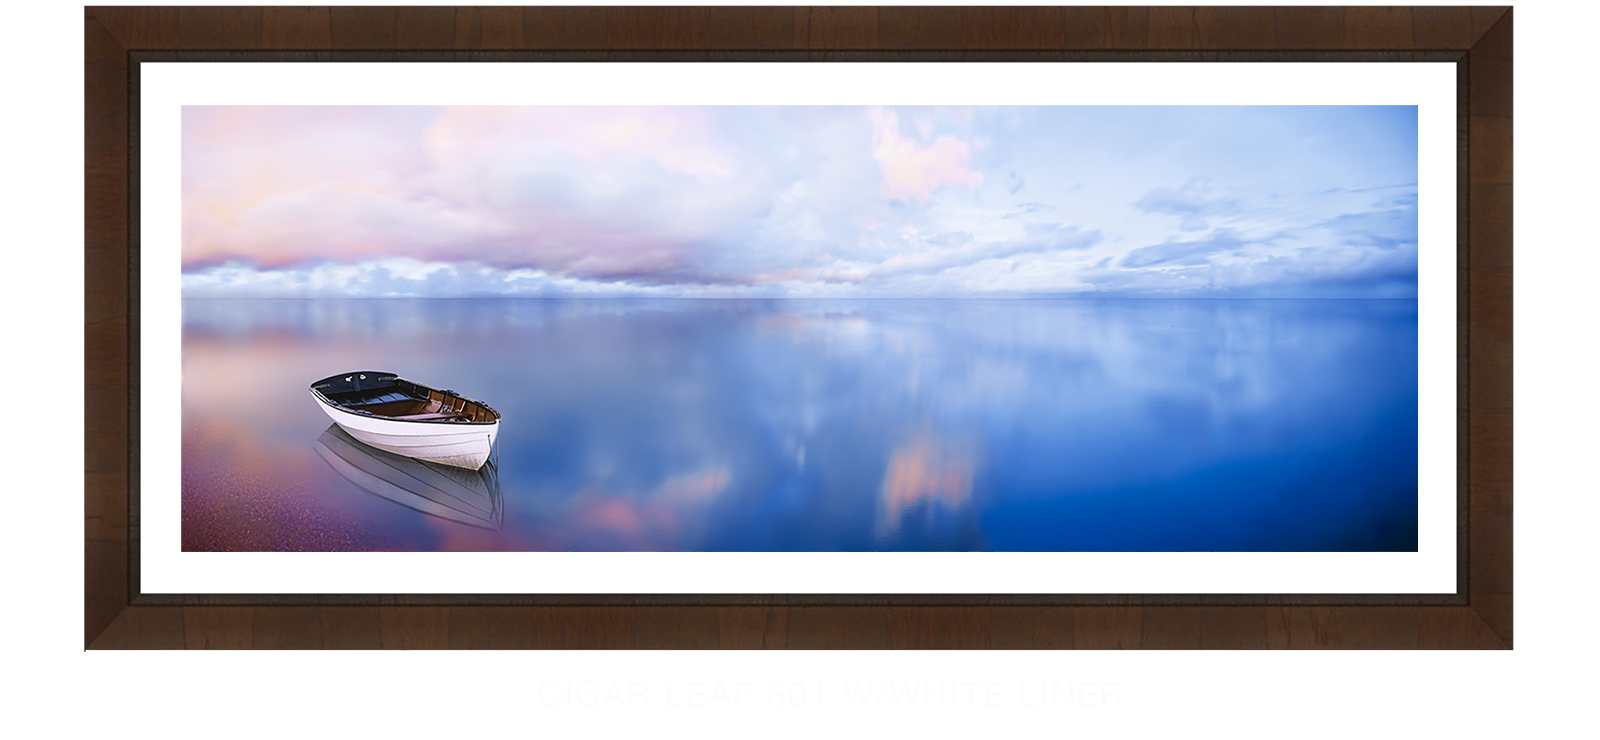 30SBLUELAKEBOAT Cigar Leaf 601 w_Wht Liner T